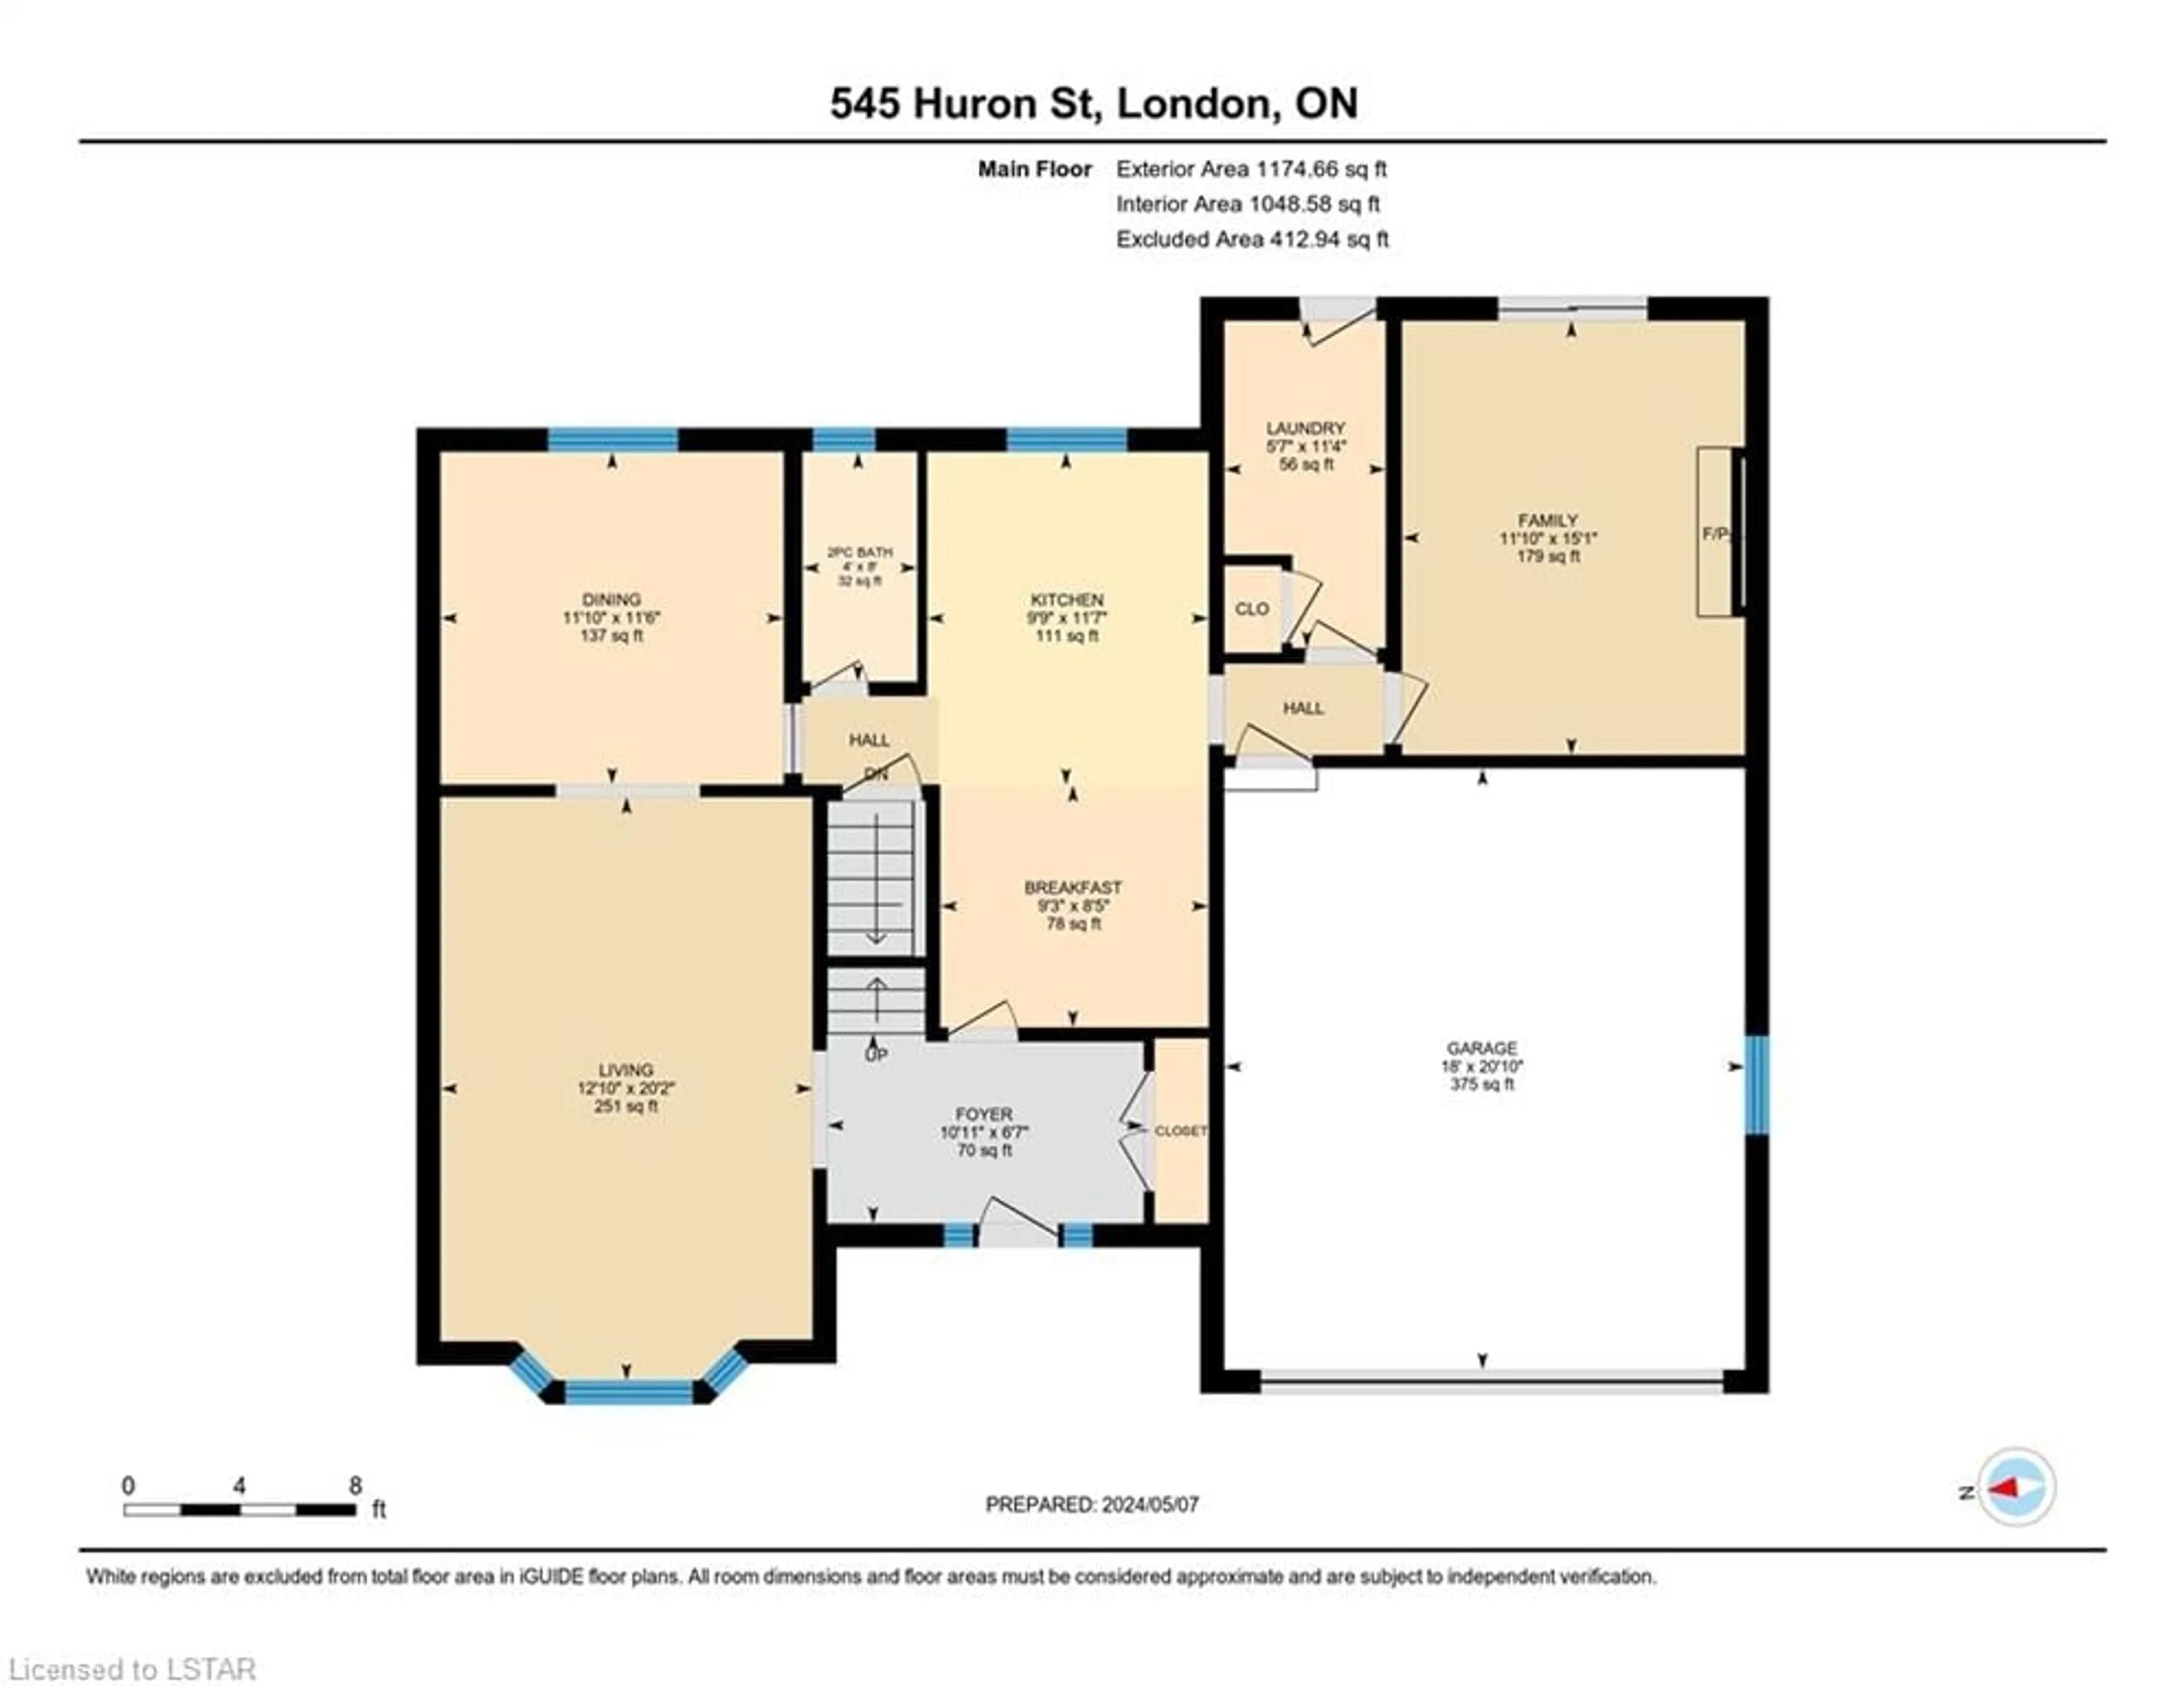 Floor plan for 545 Huron St, London Ontario N5Y 4J6